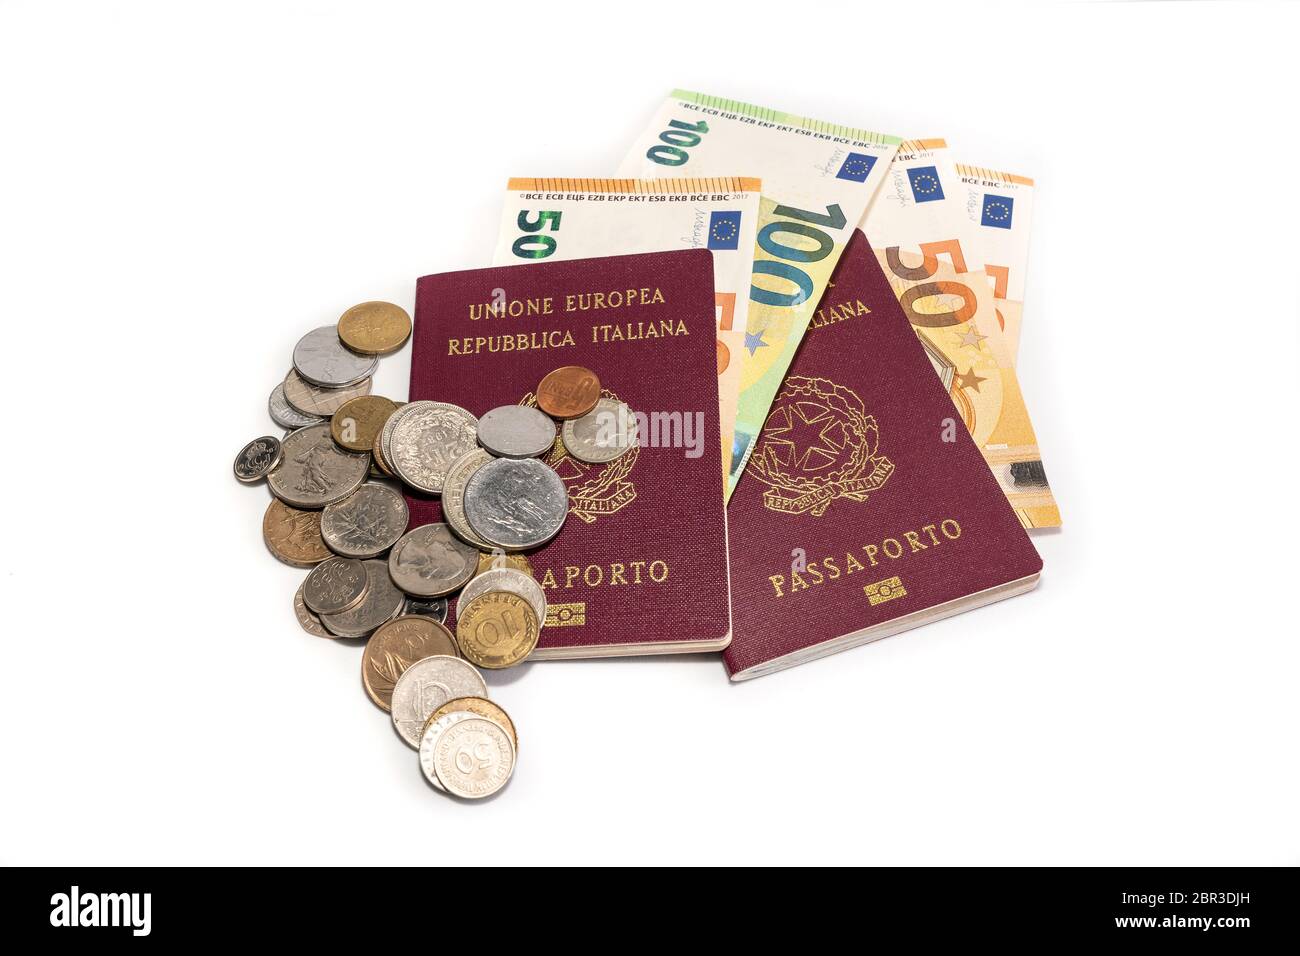 Passaporto italiano straniero e denaro in euro isolato su sfondo bianco. Passaporto e valuta necessari per viaggi e viaggi all'estero. Concetto di viaggio e denaro Foto Stock